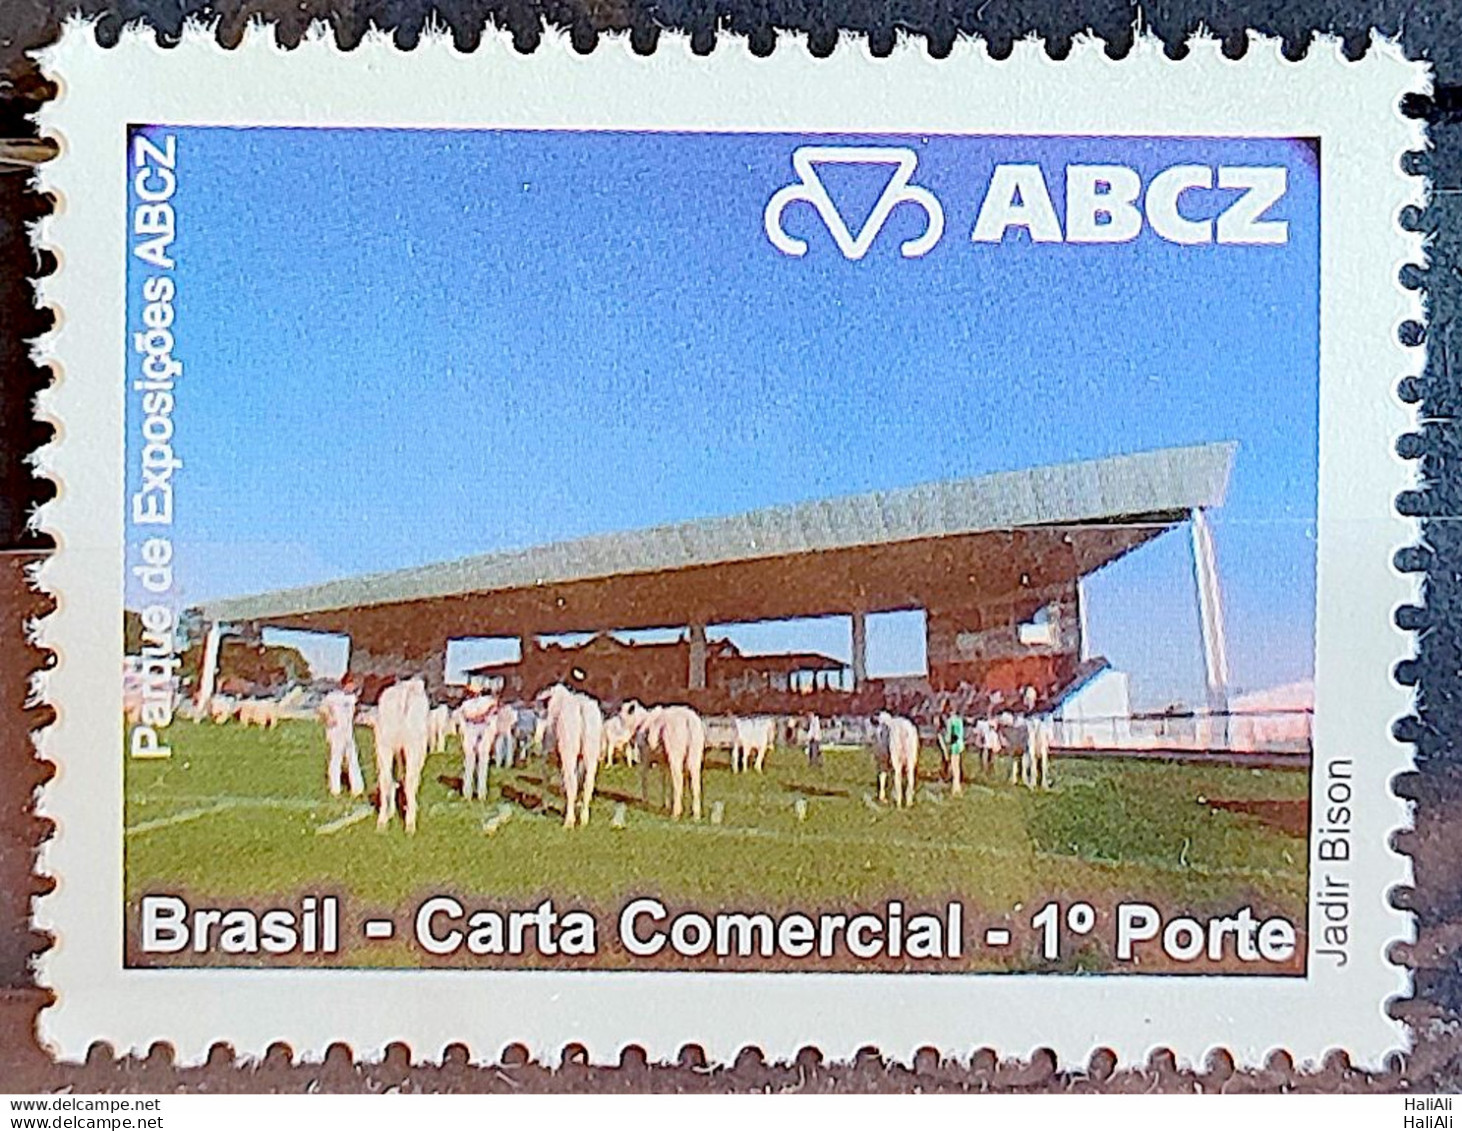 C 2800 Brazil Depersonalized Stamp EXPOZEBU ABCZ Cattle Ox 2009 Exhibition Park - Personnalisés